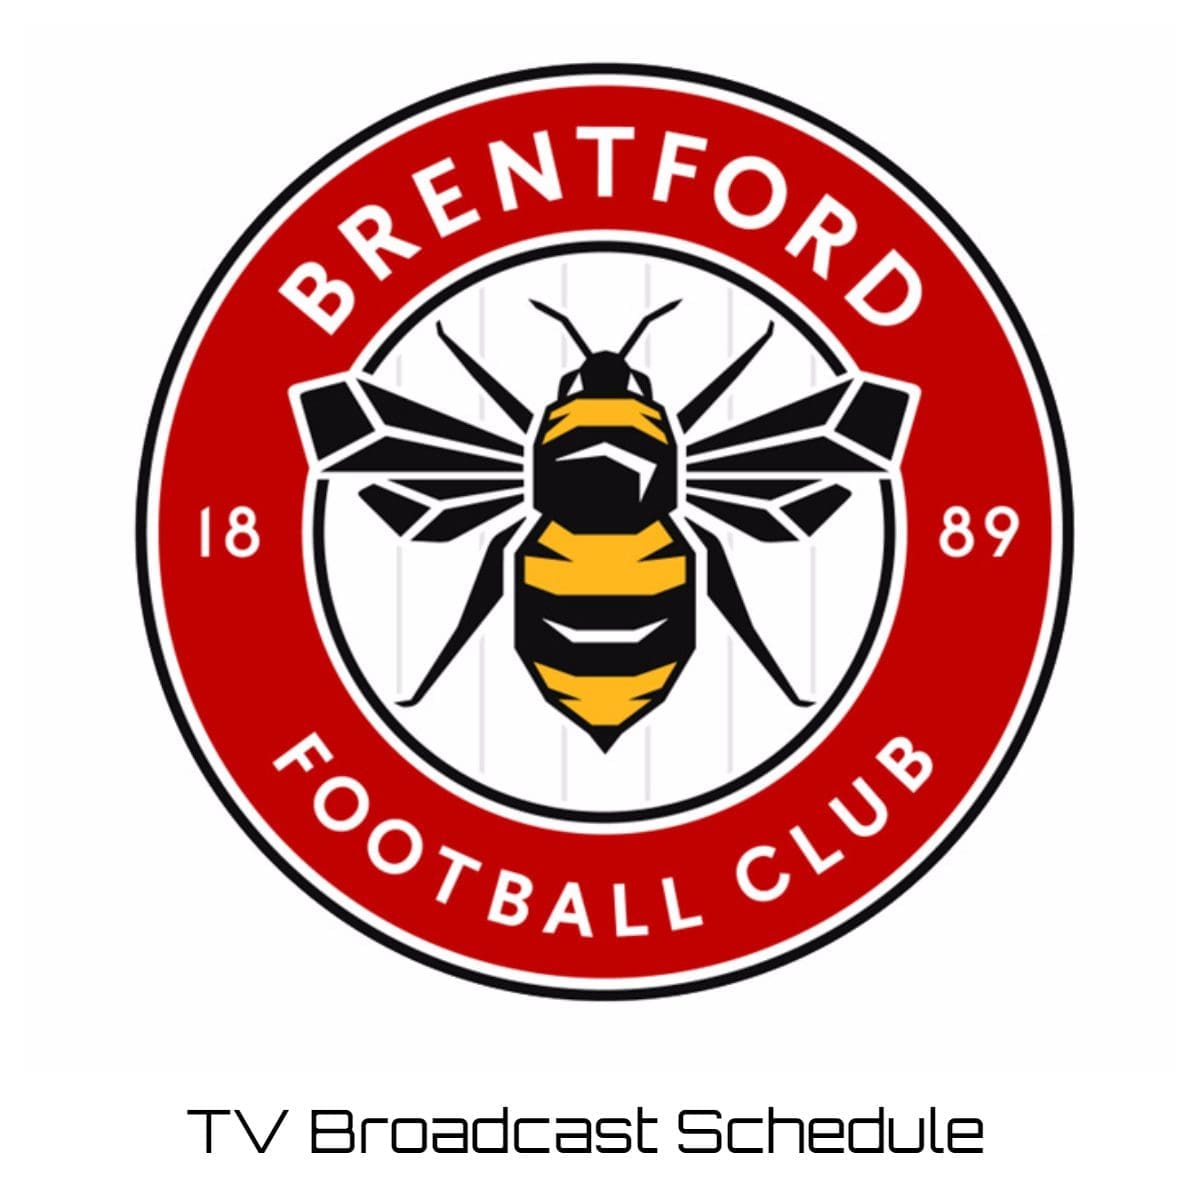 Brentford TV Broadcast Schedule